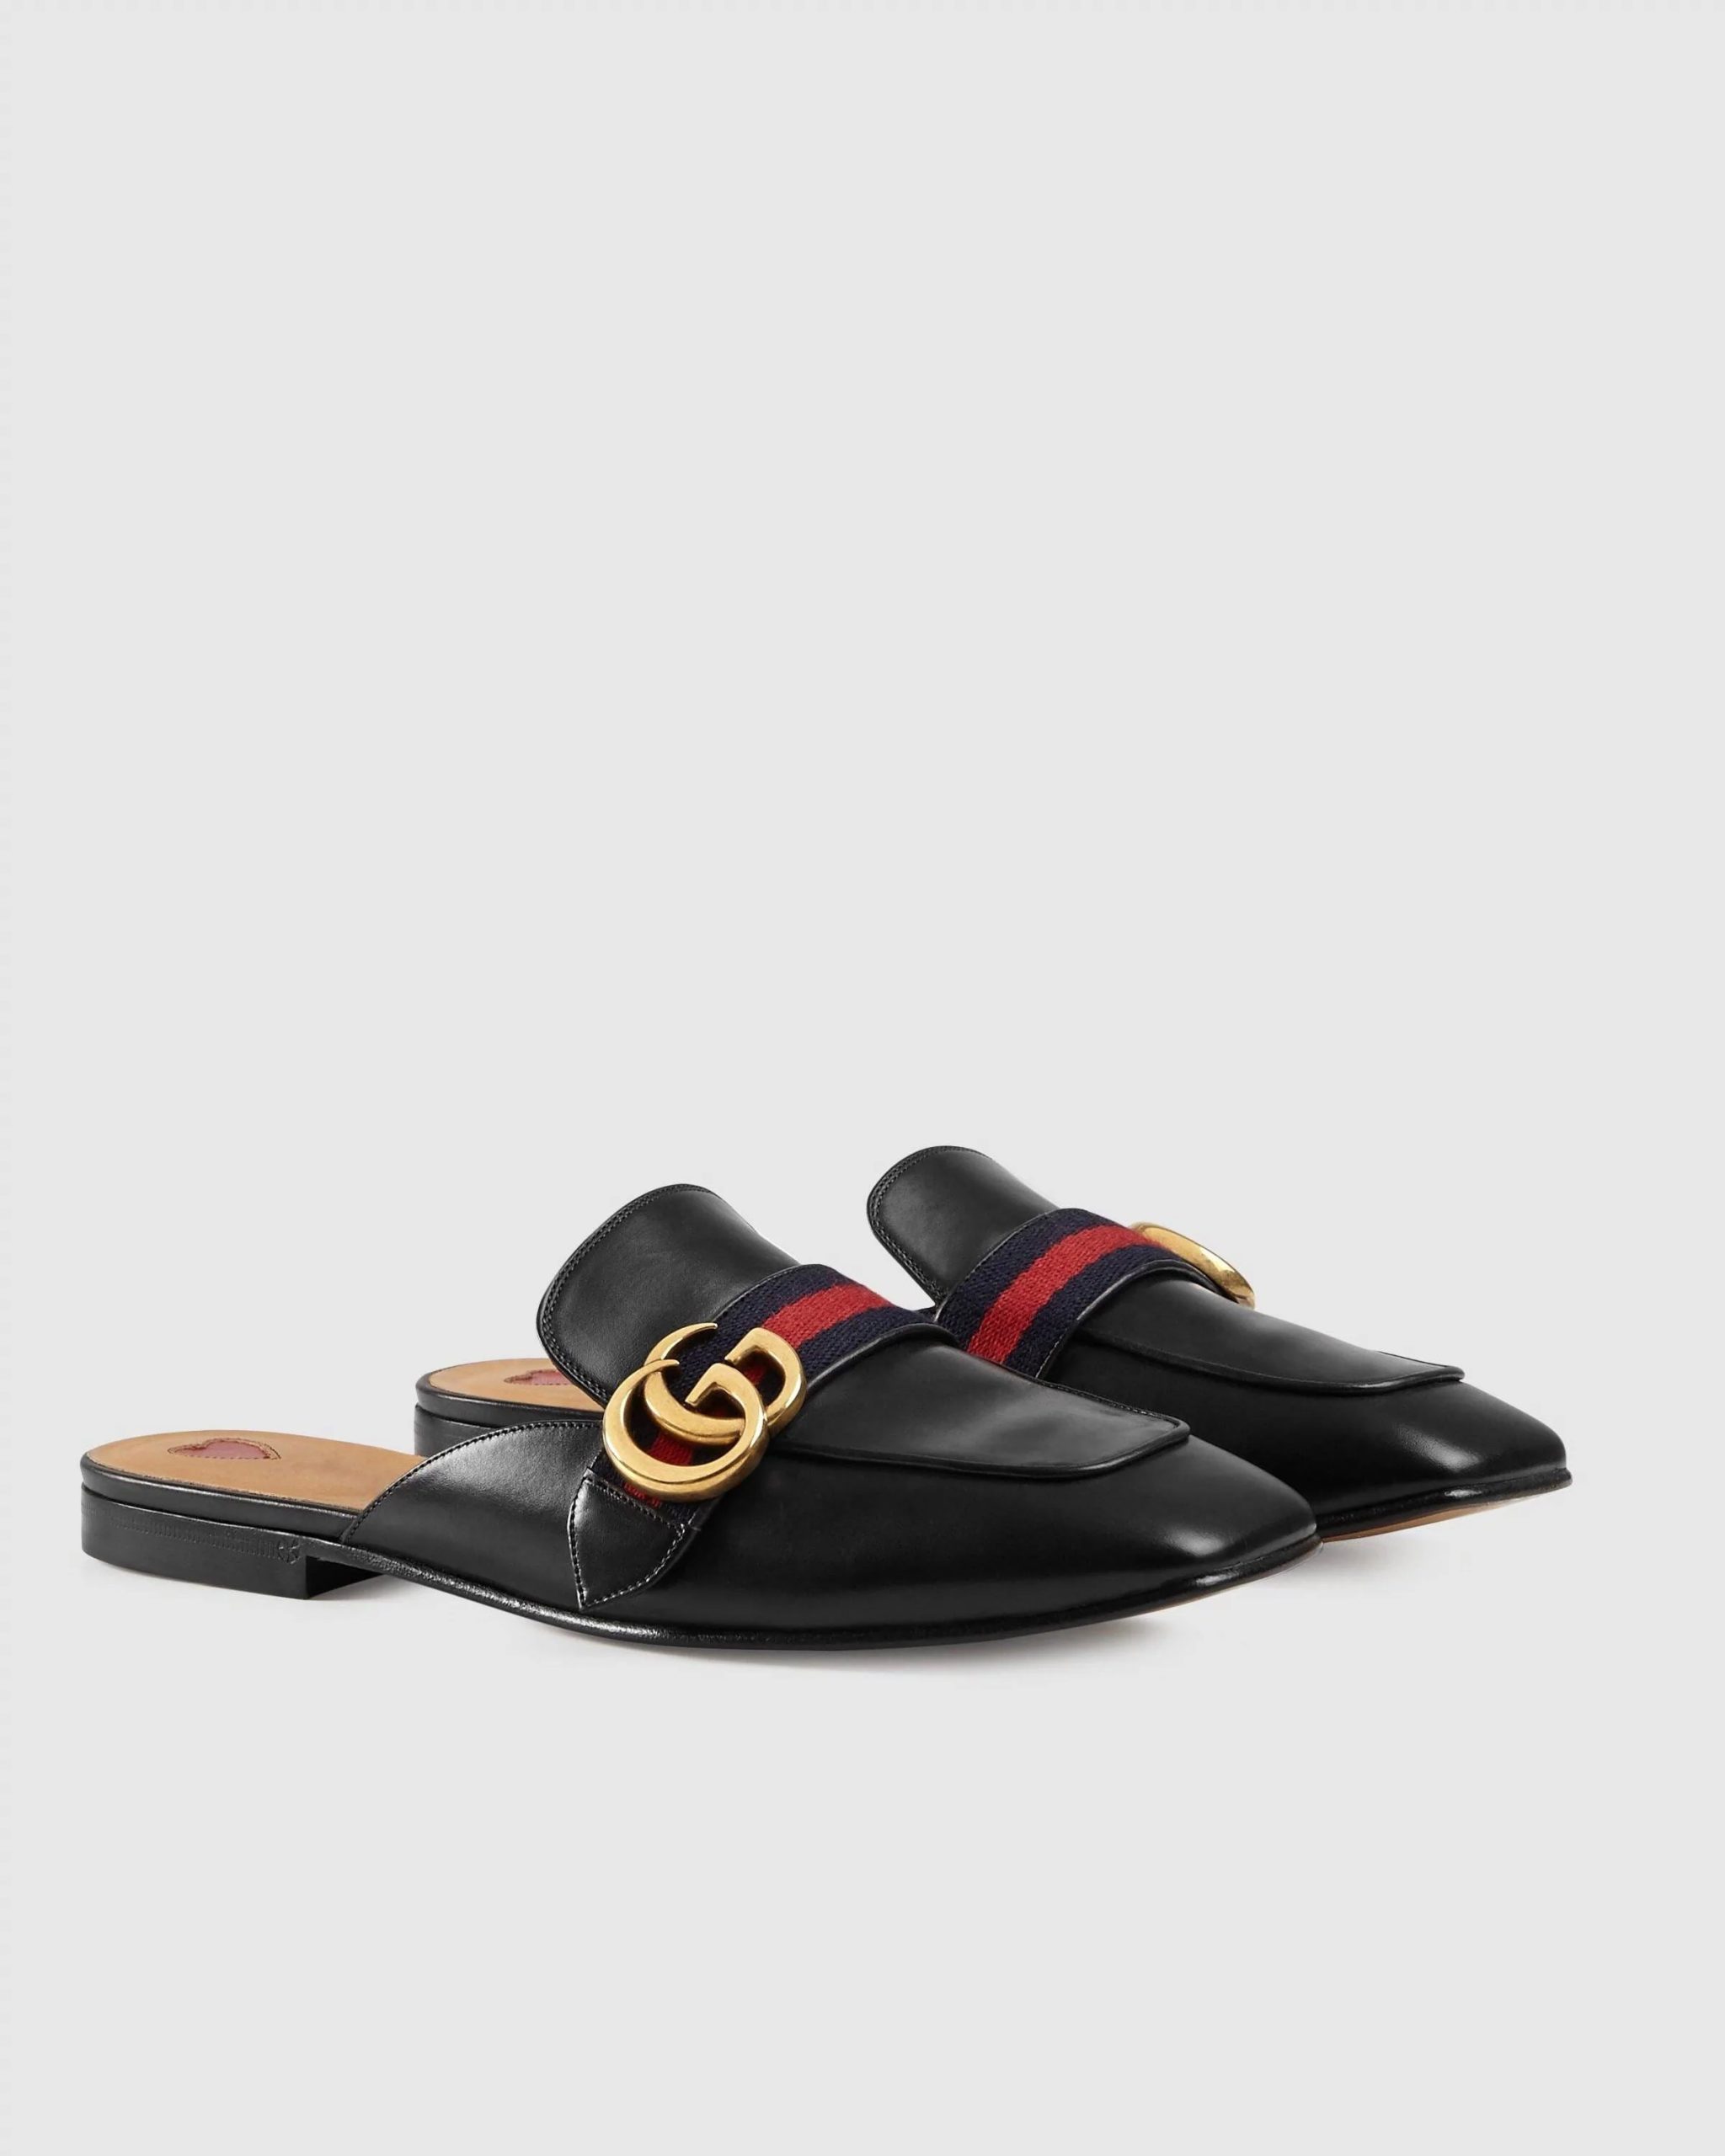 Gucci Leather Slipper, Black